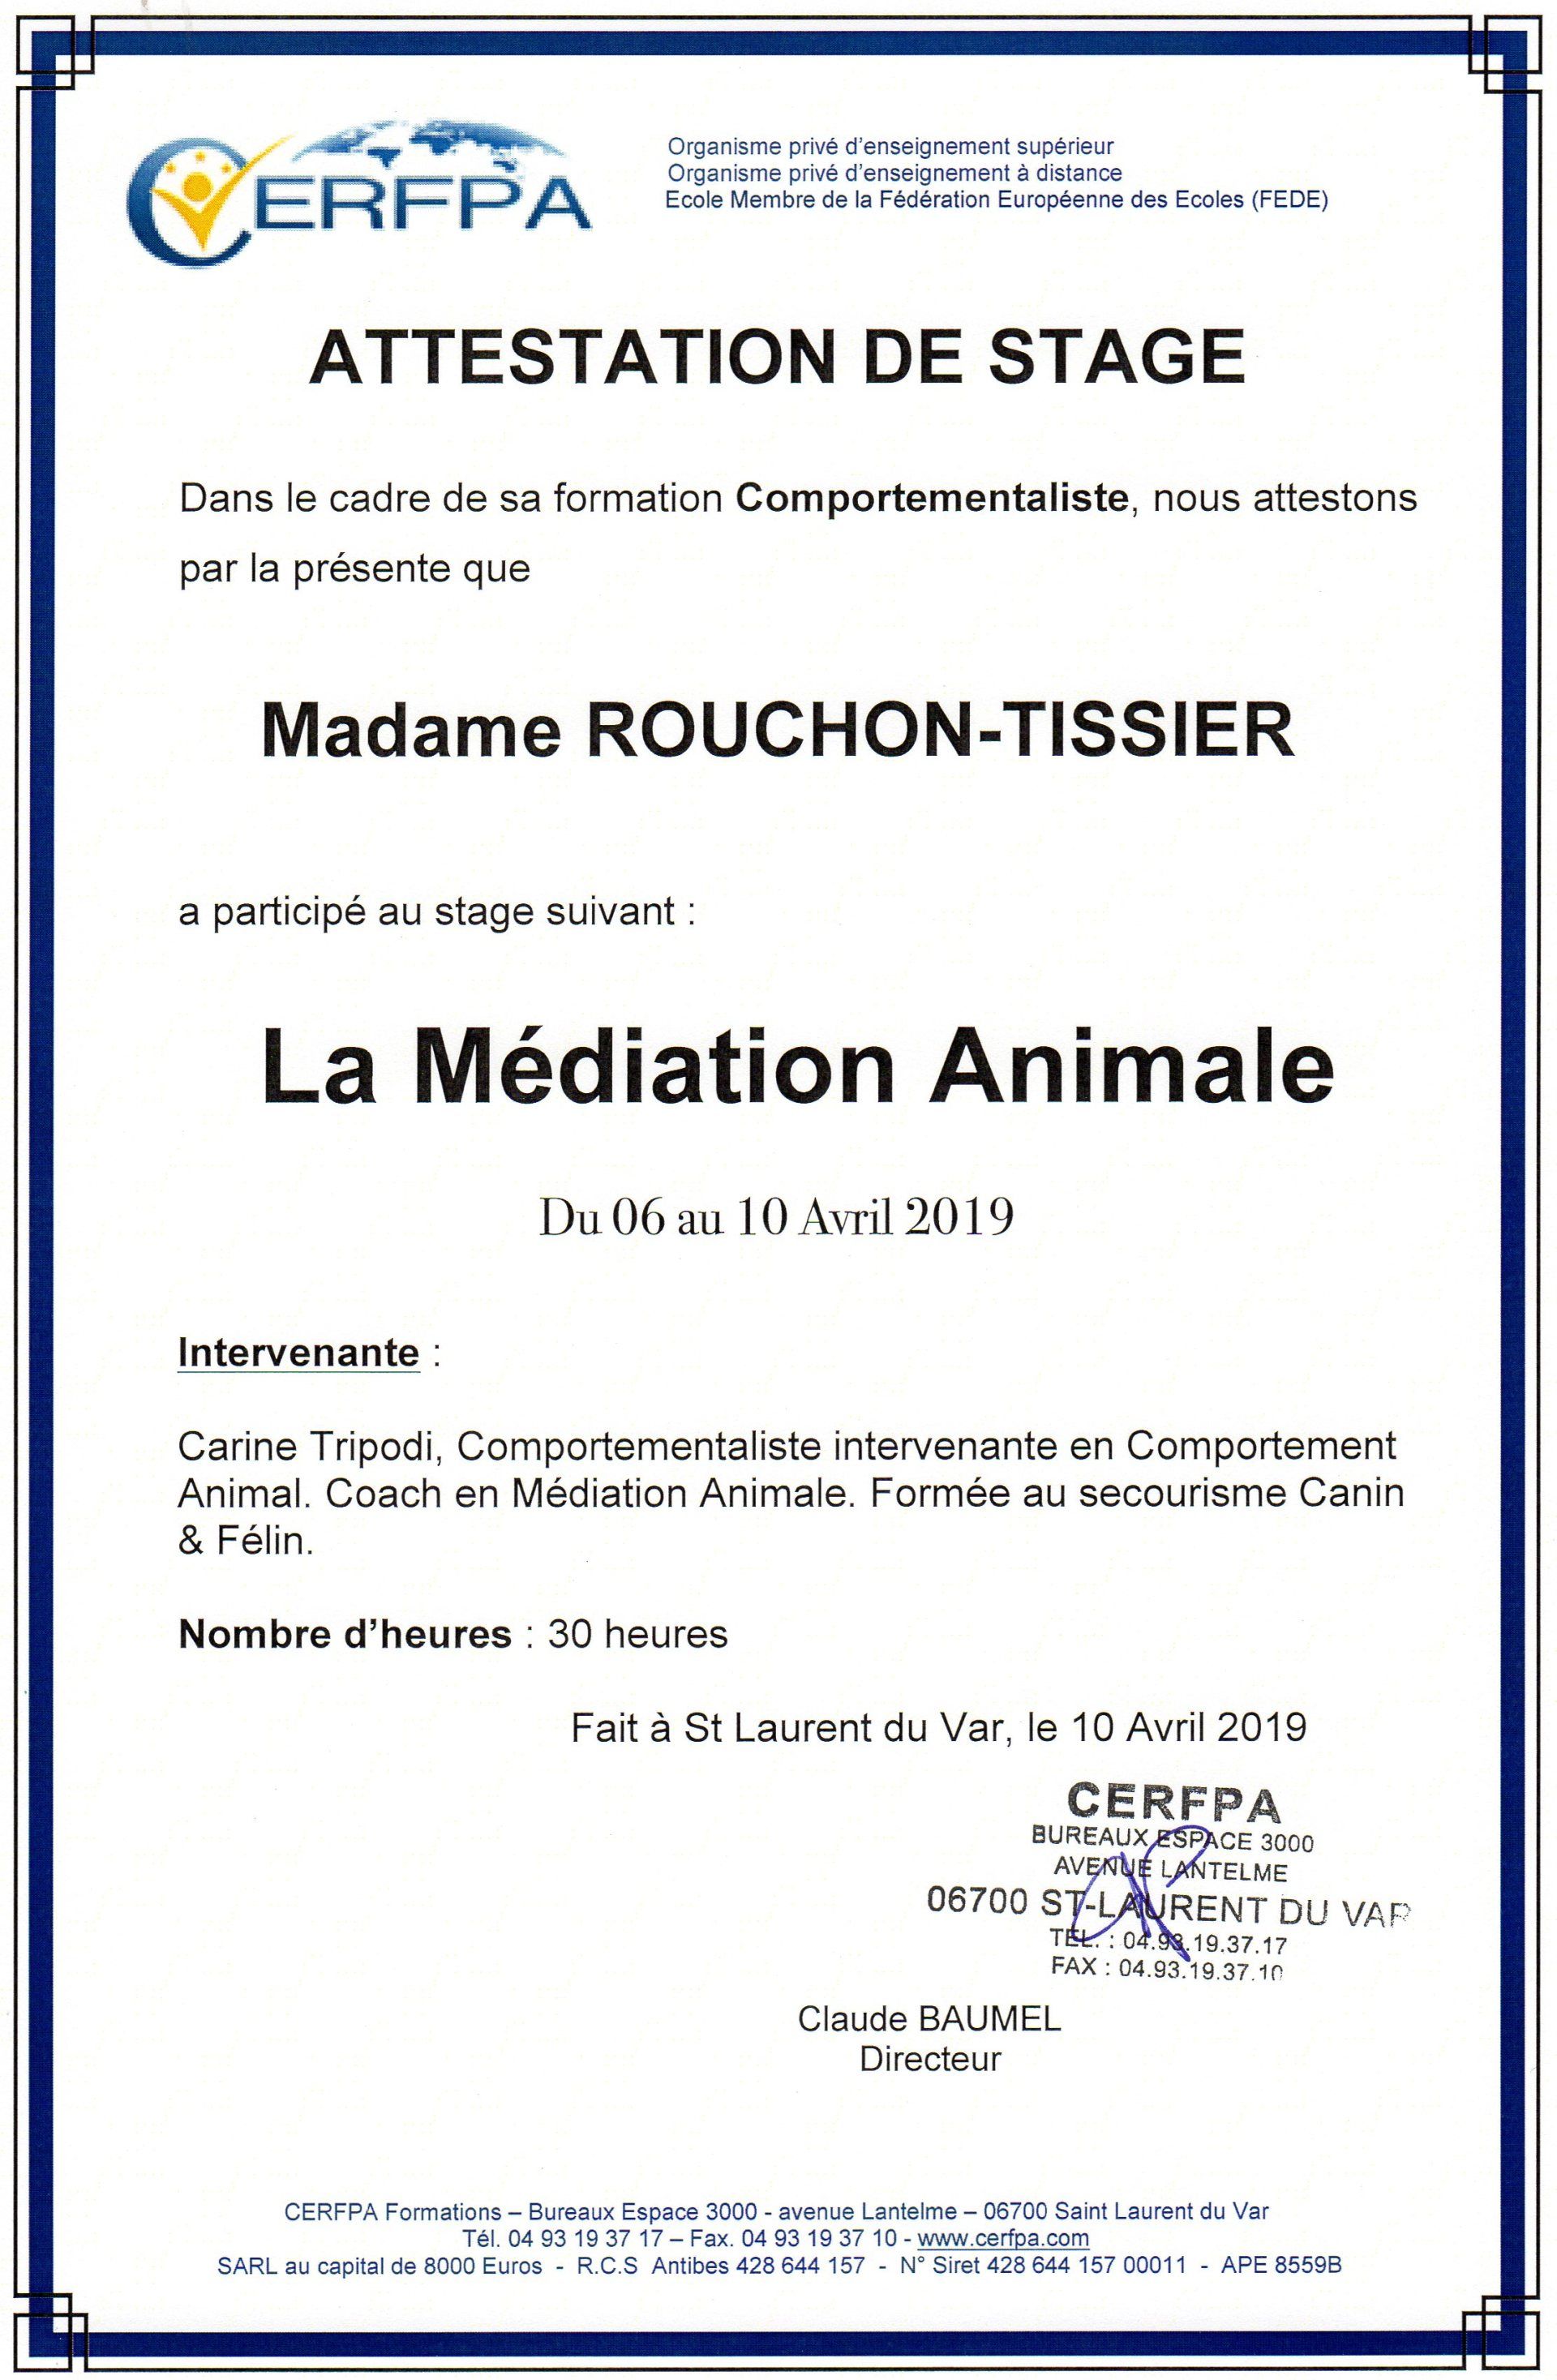 Détente Animal est certifiée dans la pratique de la médiation animale